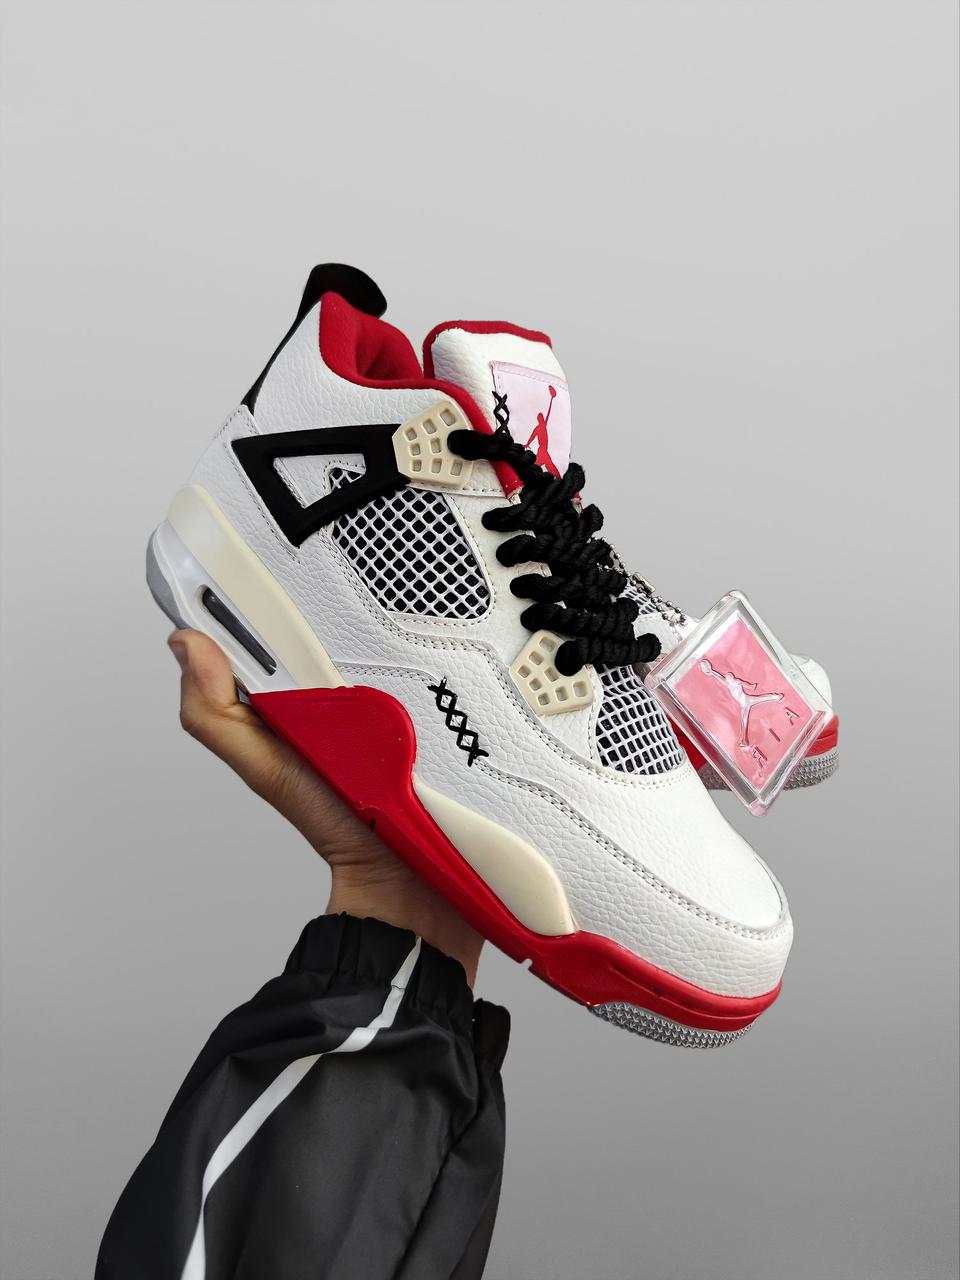 Чоловічі кросівки Nike Air Jordan 4 Retro білі з червоним Найк Джордан шкіряні осінні